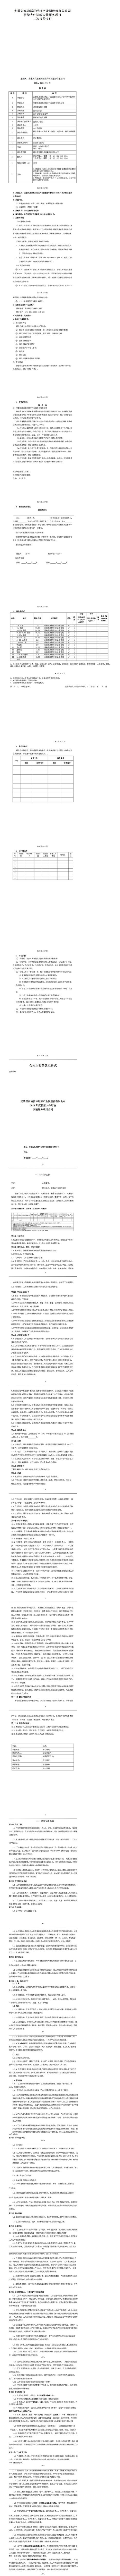 安徽省高迪循环经济产业园股份有限公司桥梁大件运输安装服务项目二次报价(3)_01.jpg